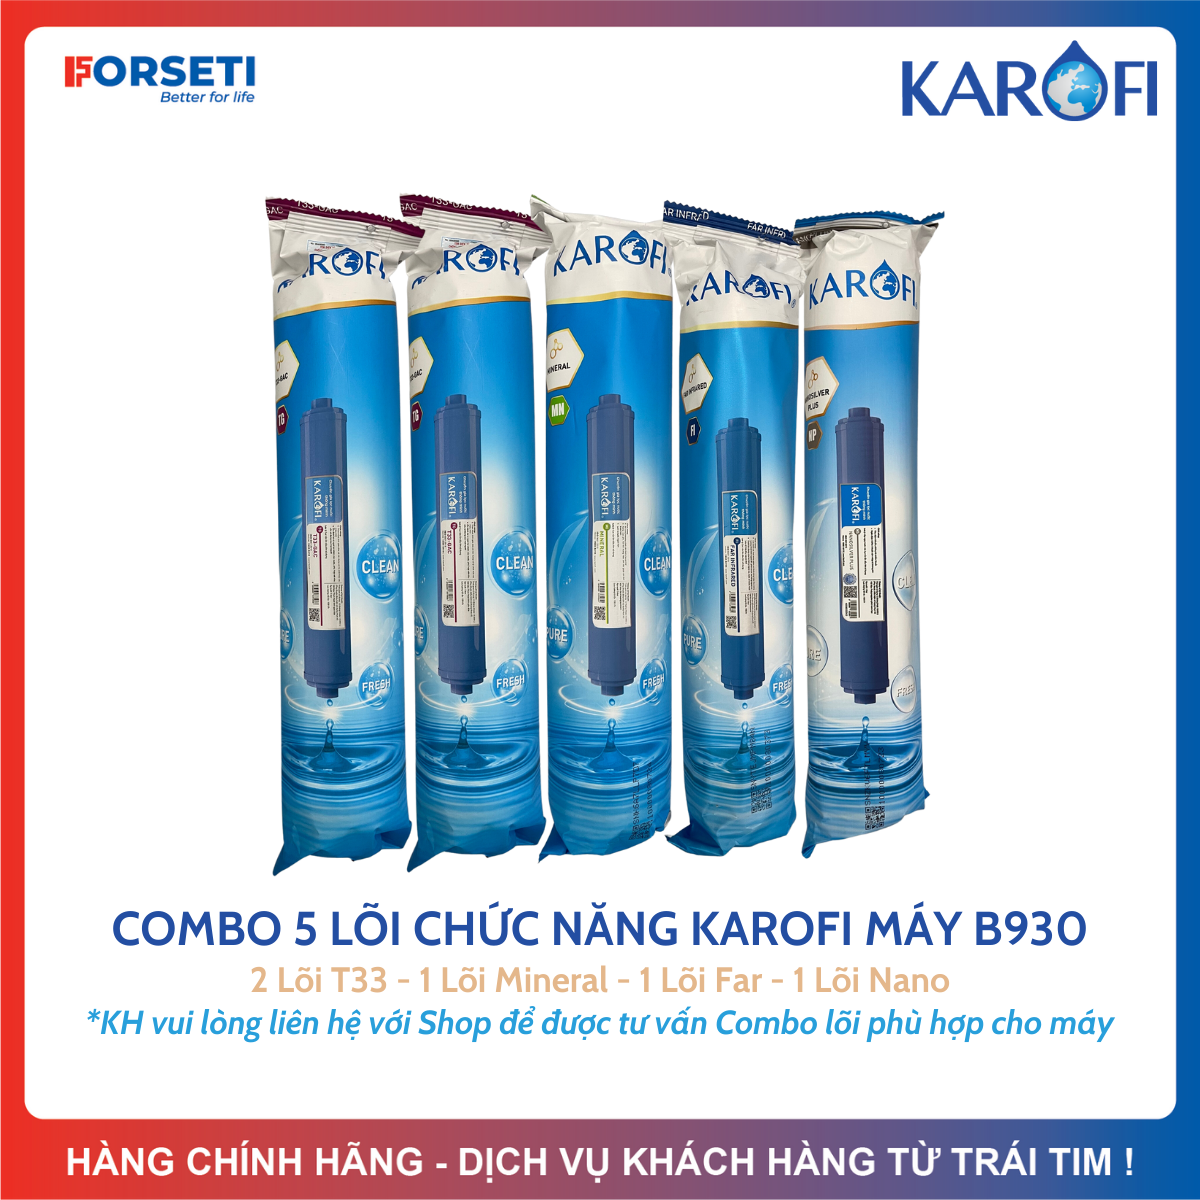 Combo 9 lõi lọc nước Karofi chính hãng dùng cho máy lọc nước Karofi B930 N-e239